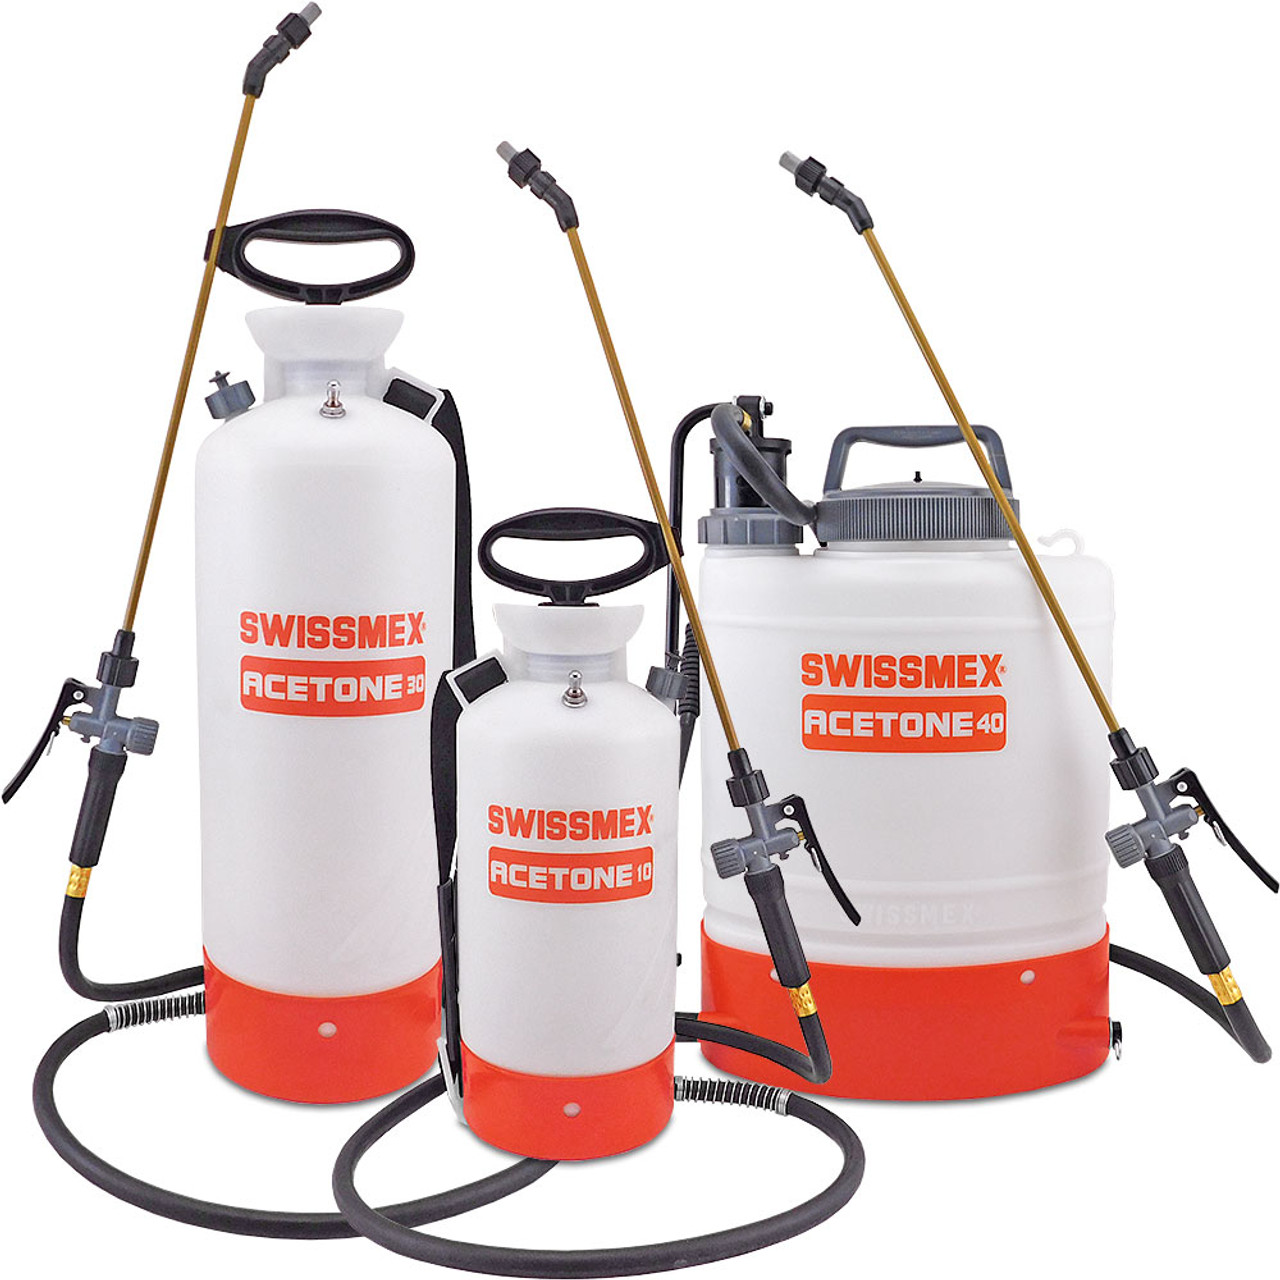 Swissmex Industrial Acetone / Alcohol Sprayers